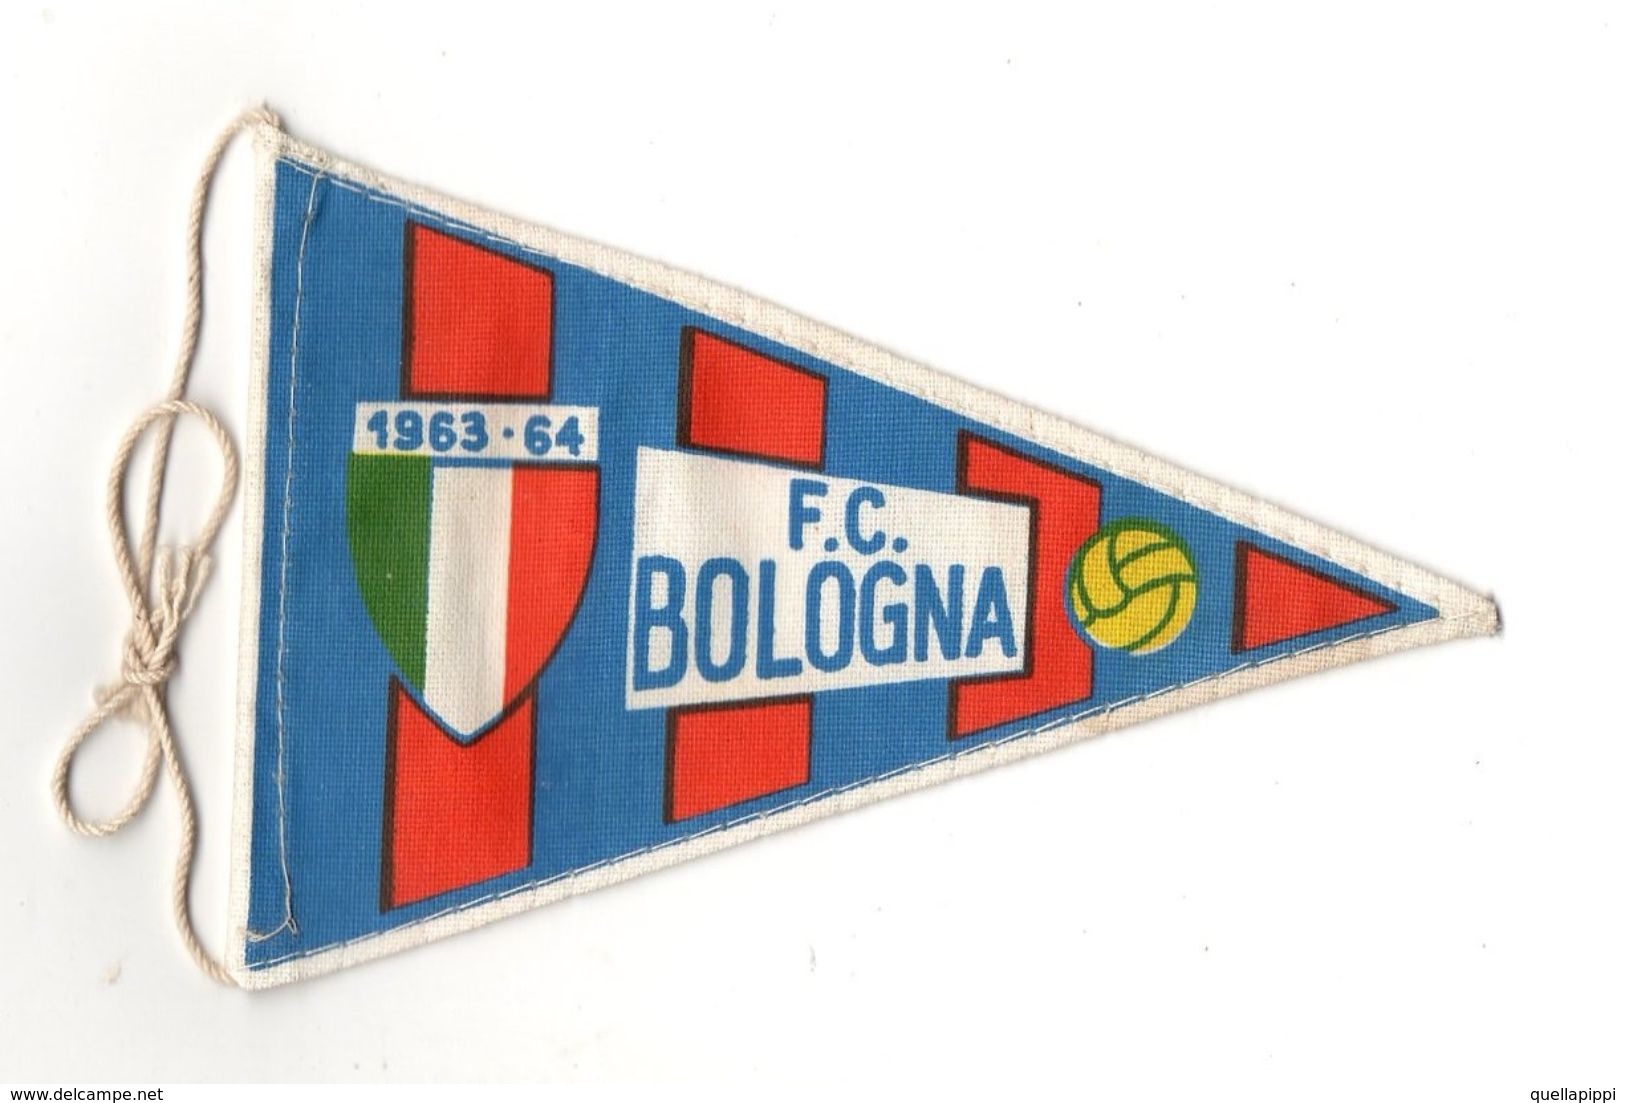 07130 "BOLOGNA F.C. FOOTBALL CLUB - BANDIERINA BIFRONTE IN STOFFA CON LEGACCI" ANNI 1963/1964 ORIG. - Kleding, Souvenirs & Andere